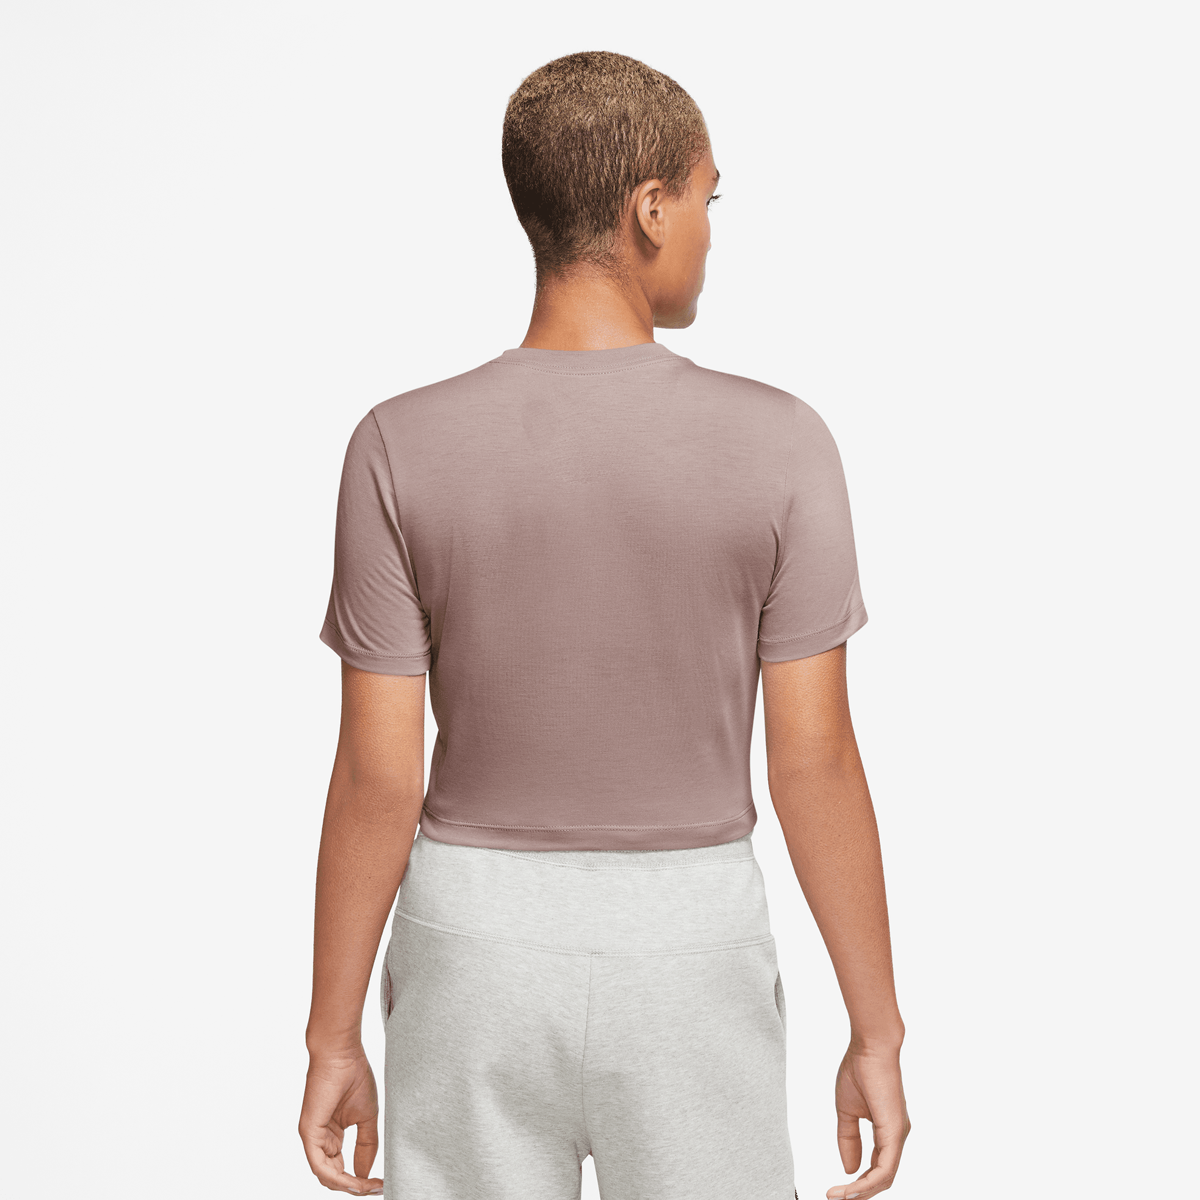 Nike Sportswear Essentials Slim Crop Top T-shirts Dames smokey mauve maat: S beschikbare maaten:XS S M L XL